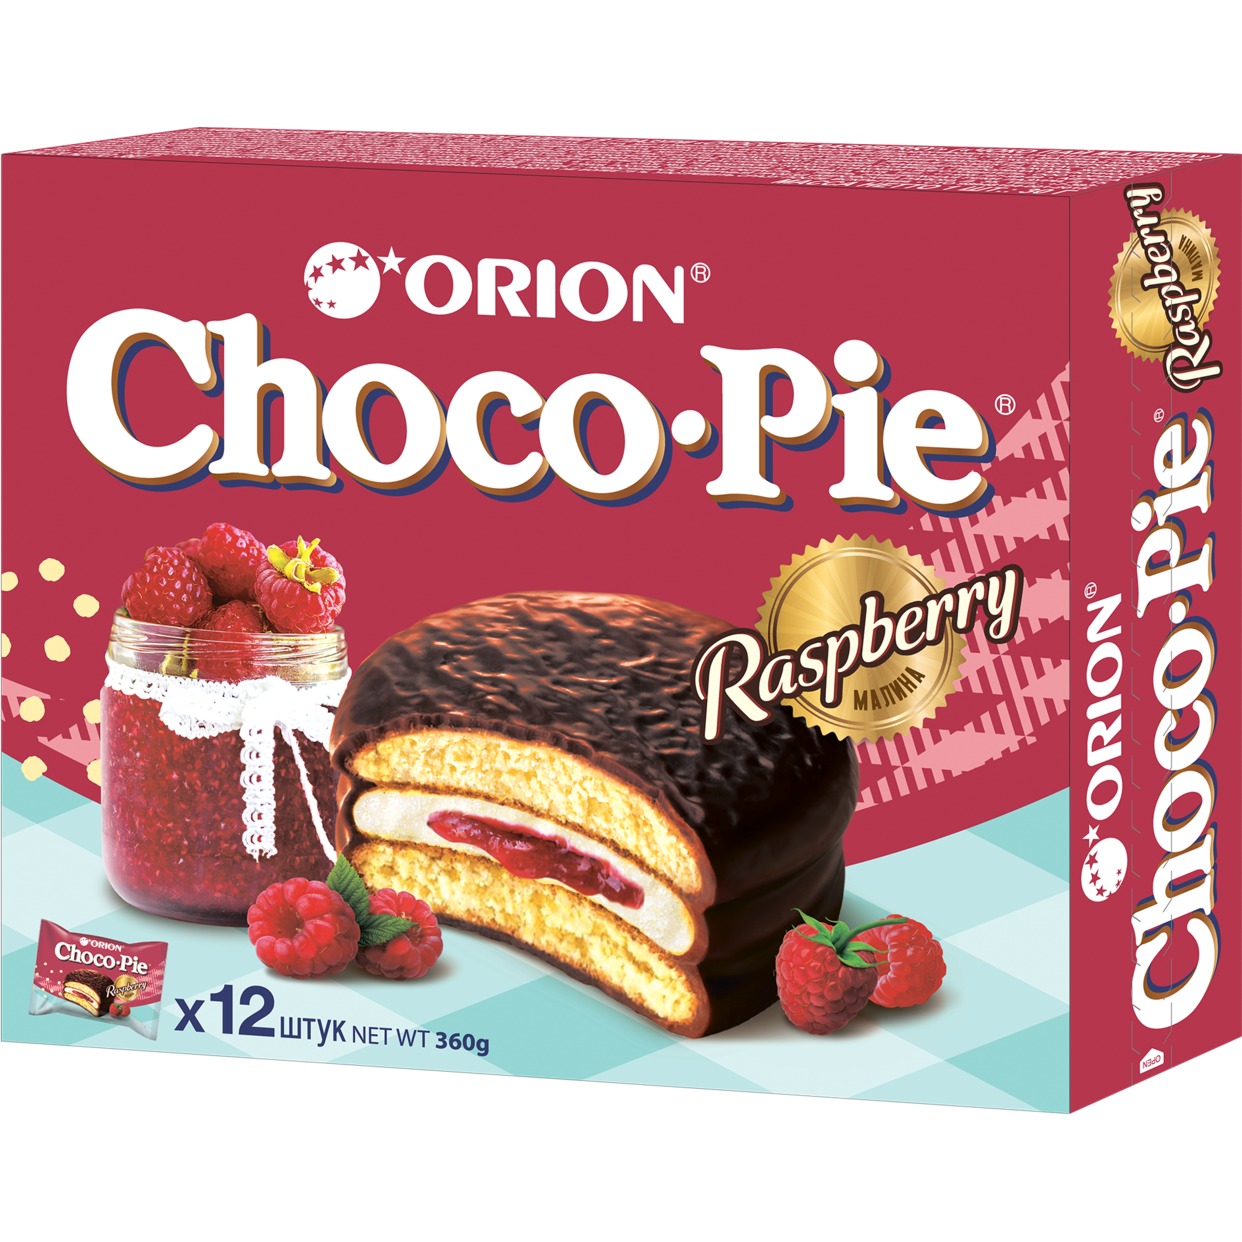 Мучное кондитерское изделие в глазури «Choco Pie Raspberry» («Чоко Пай Малина»), 360 гр по акции в Пятерочке